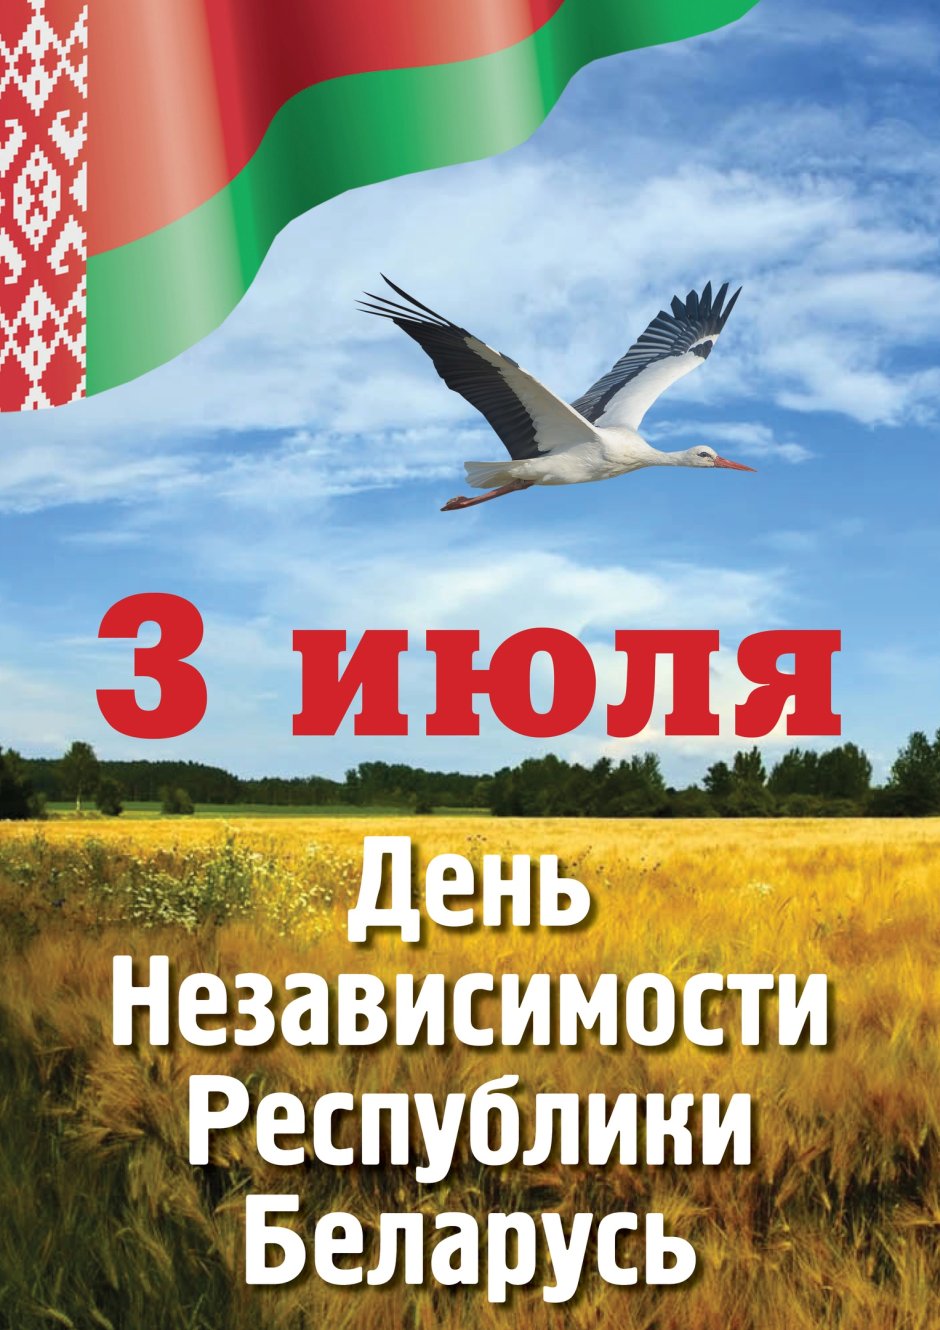 Патриотическое воспитание Беларусь